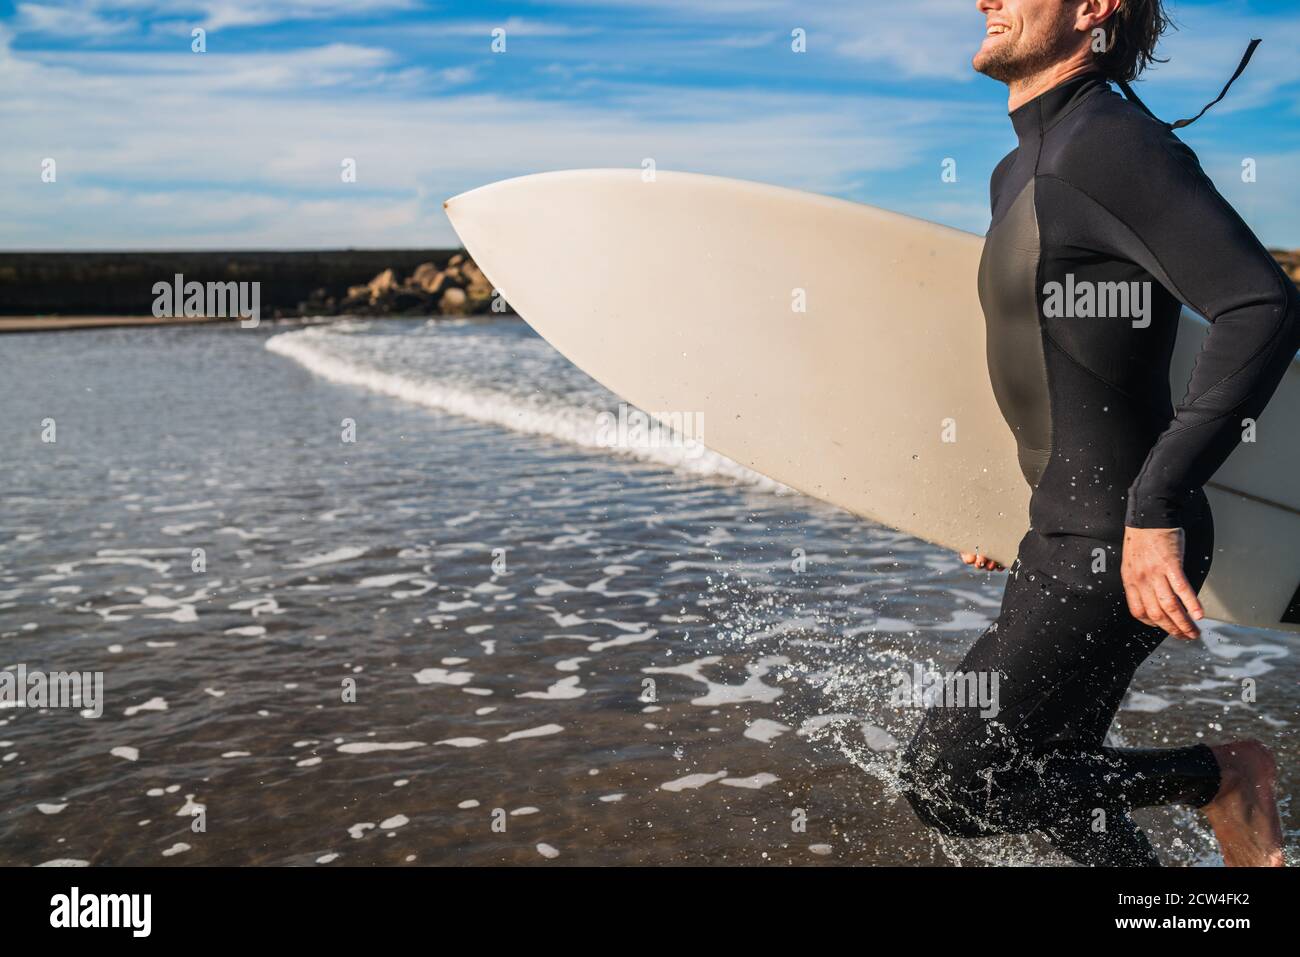 Portrait d'un jeune surfeur laissant l'eau avec planche de surf sous son bras. Sport et sport nautique. Banque D'Images